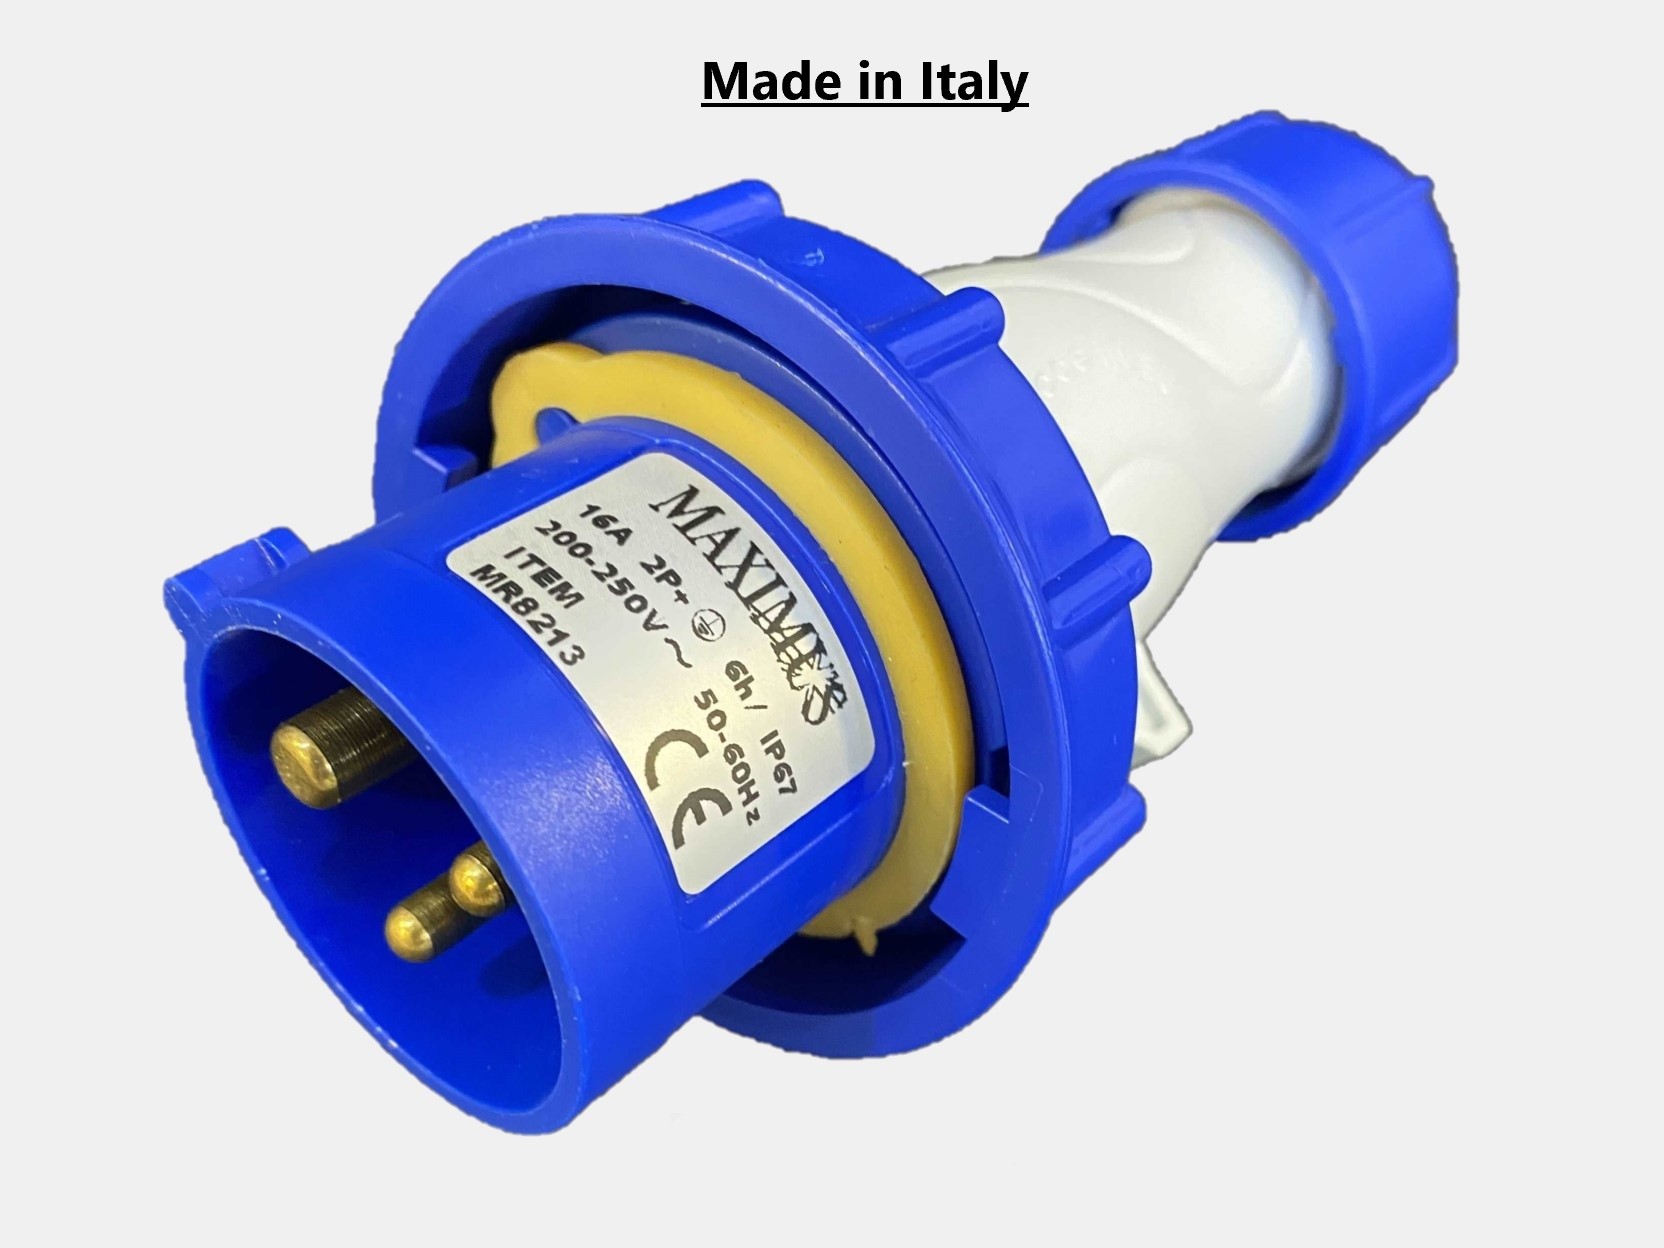 Maximus ENDURAA Industrial Plug - 16A 2 POLE+E  220/240V Movable Plug IP67 (Blue color - MR8213)